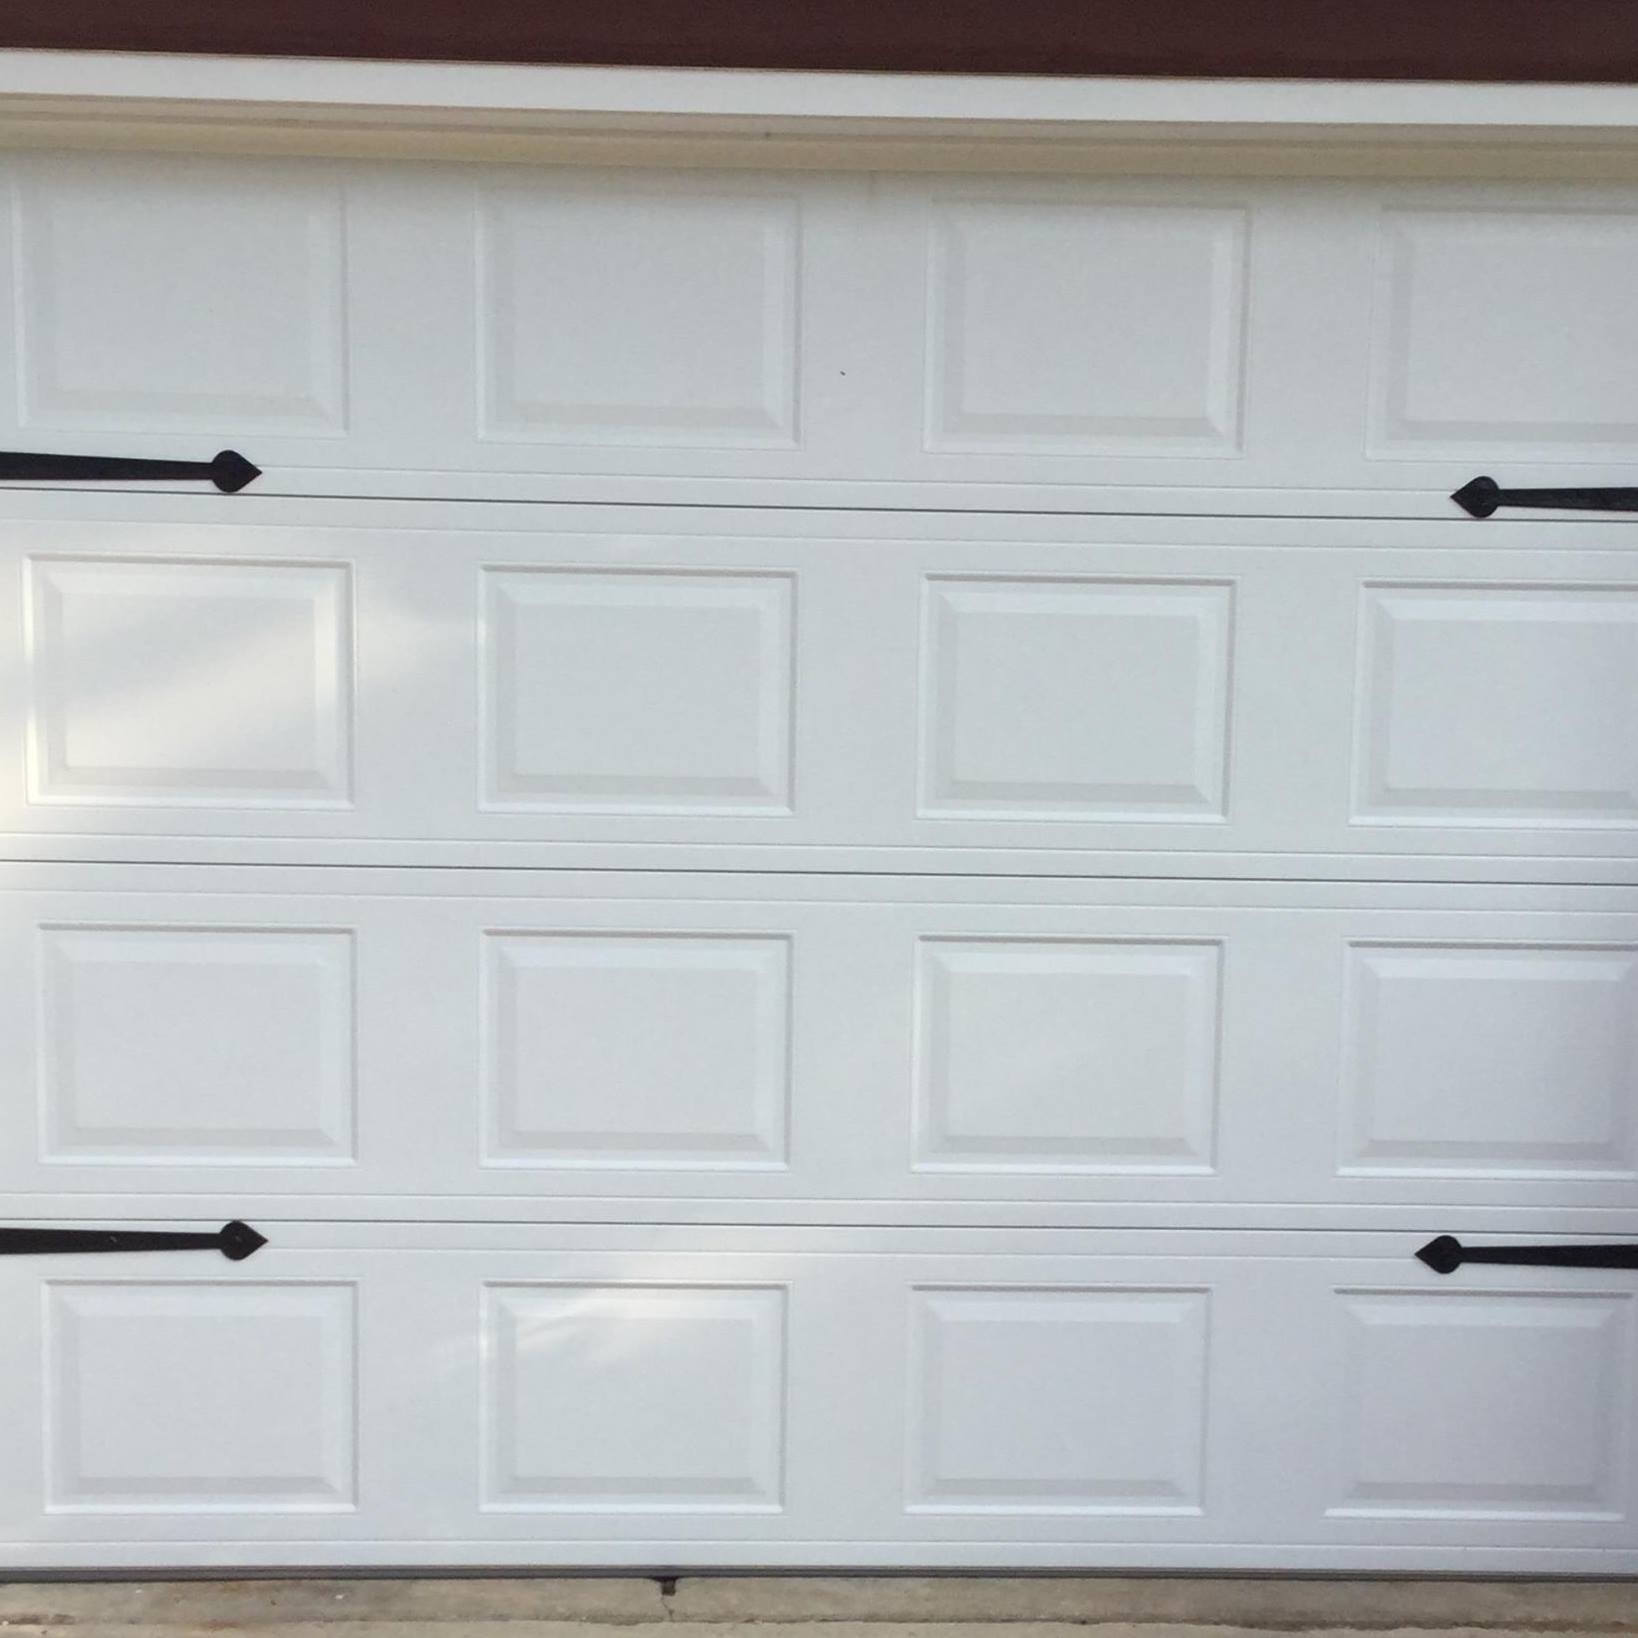 Doersch Garage Door Sales And Service 227 W Walnut St, Seymour Wisconsin 54165